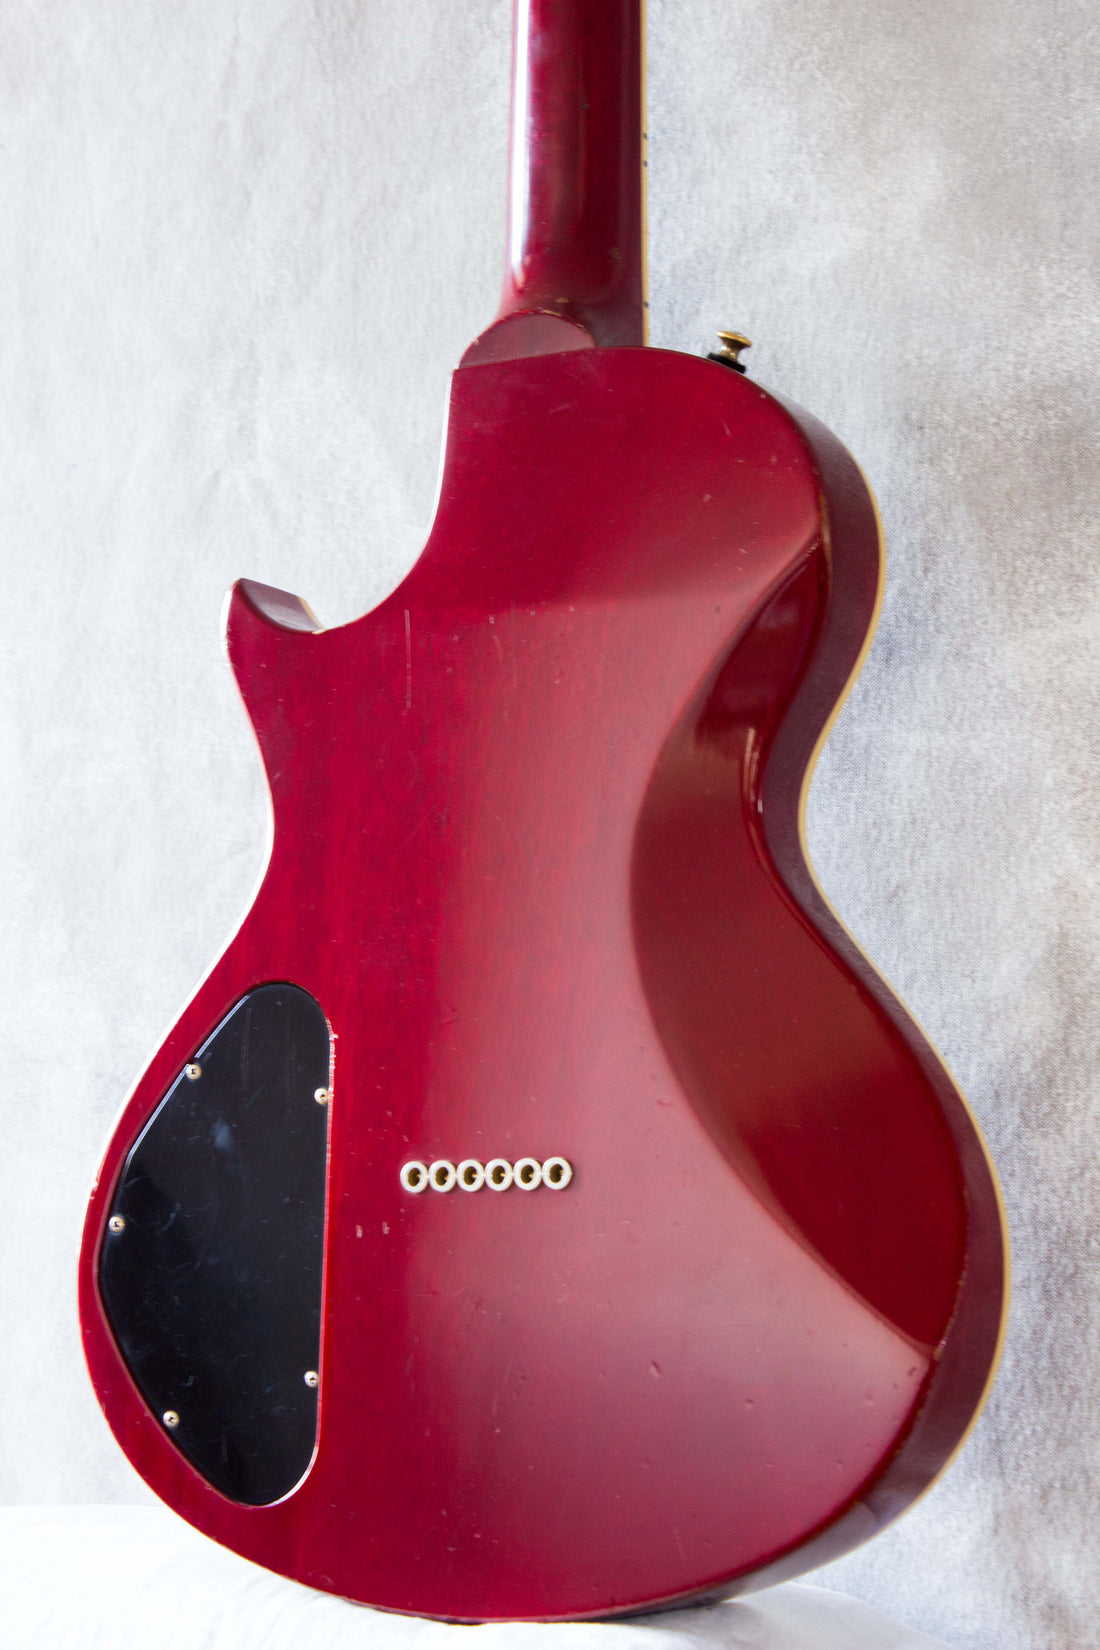 Gibson Nighthawk Standard ST3 Fireburst 1996